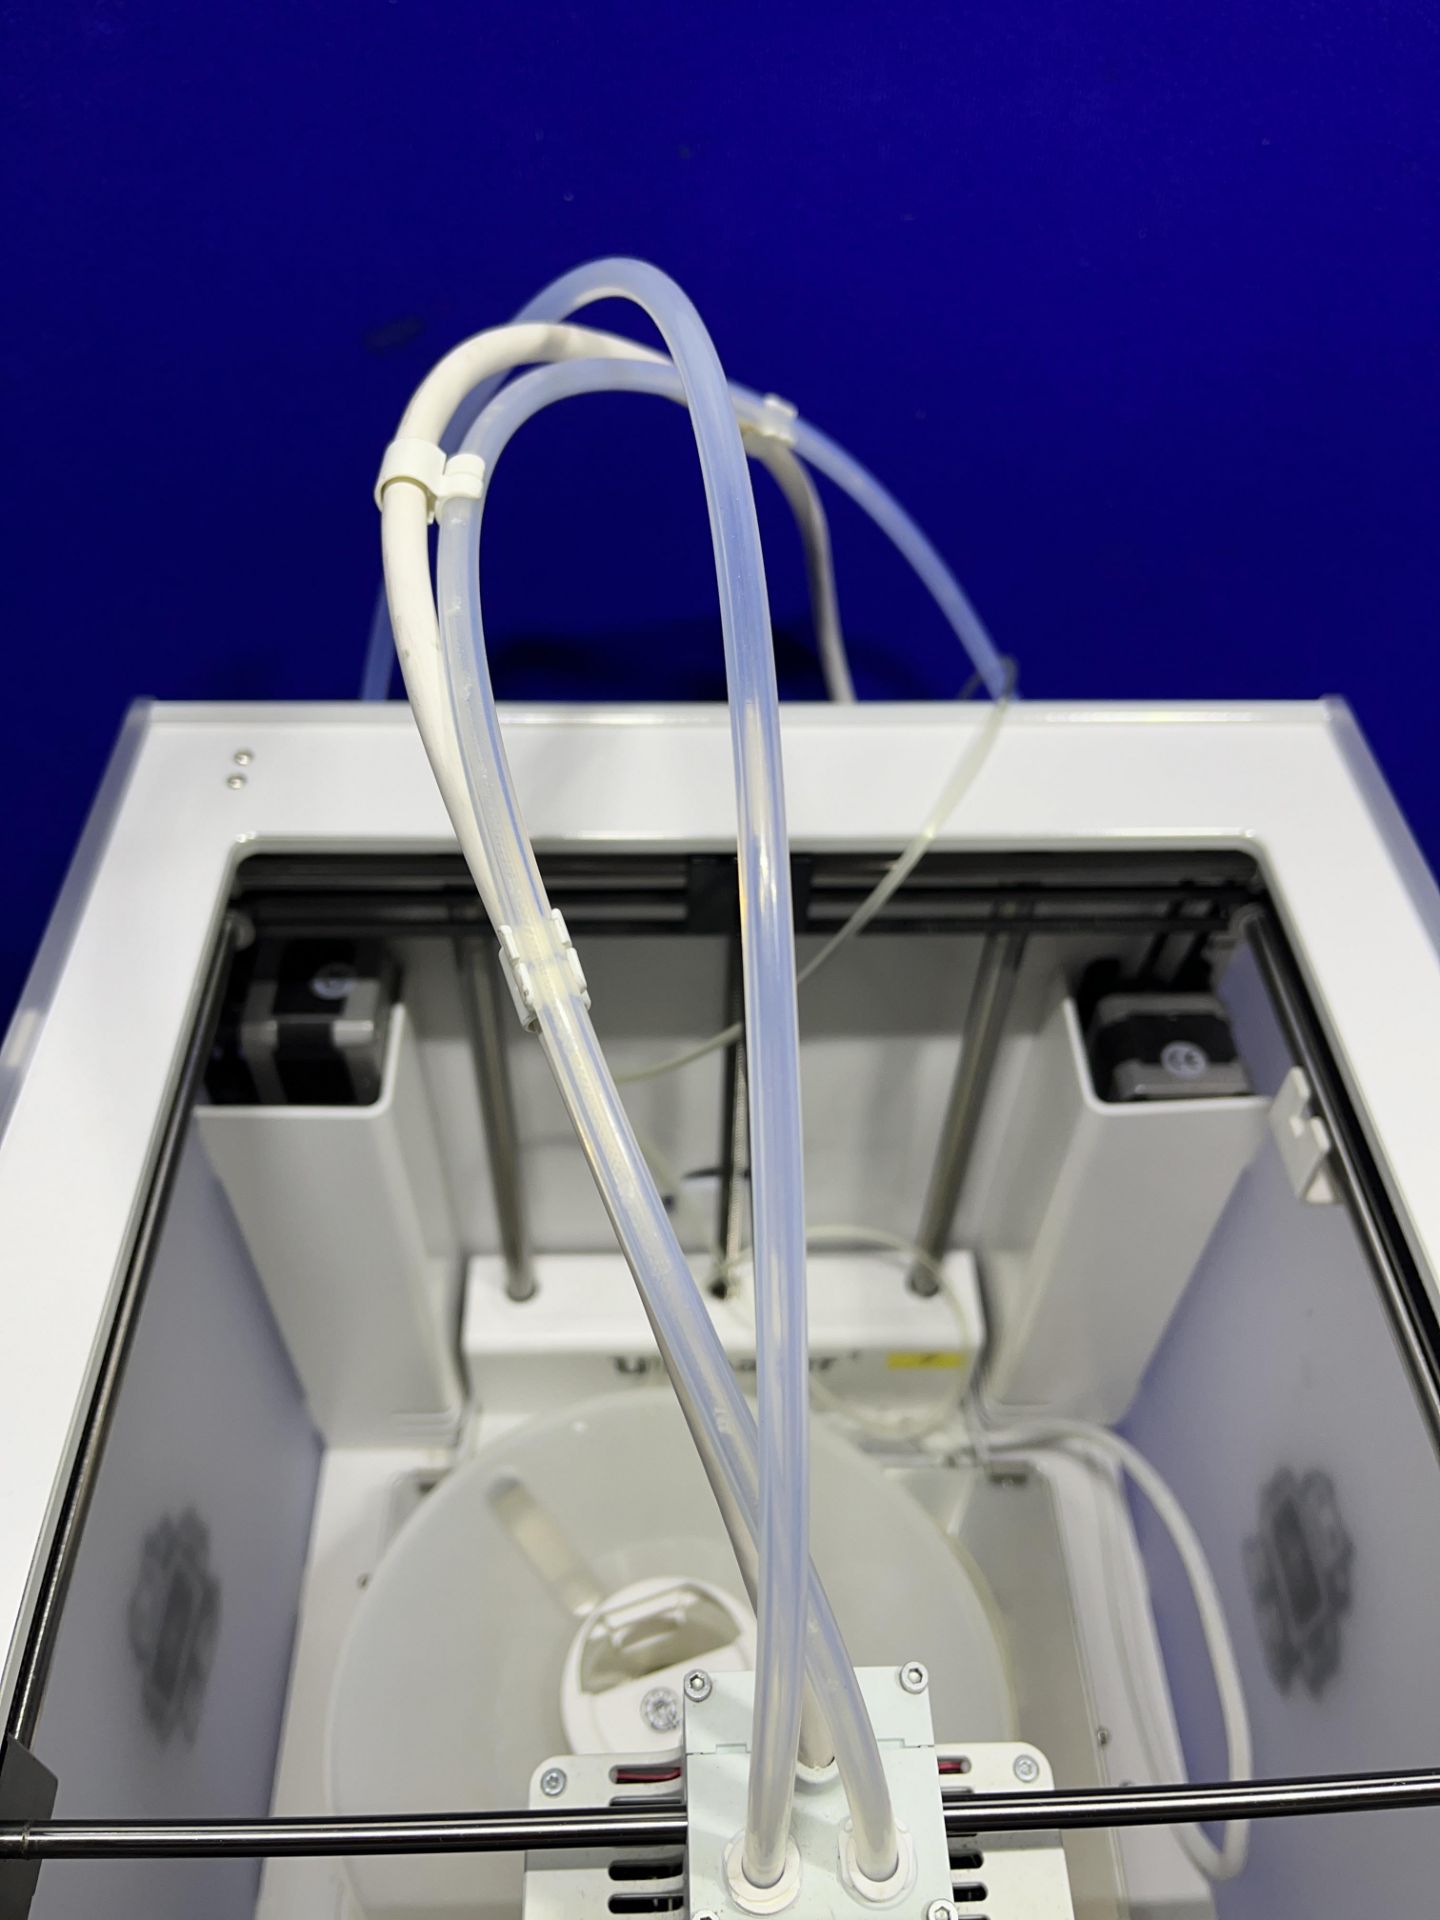 Ultimaker Model 3 3D printer - Image 4 of 5